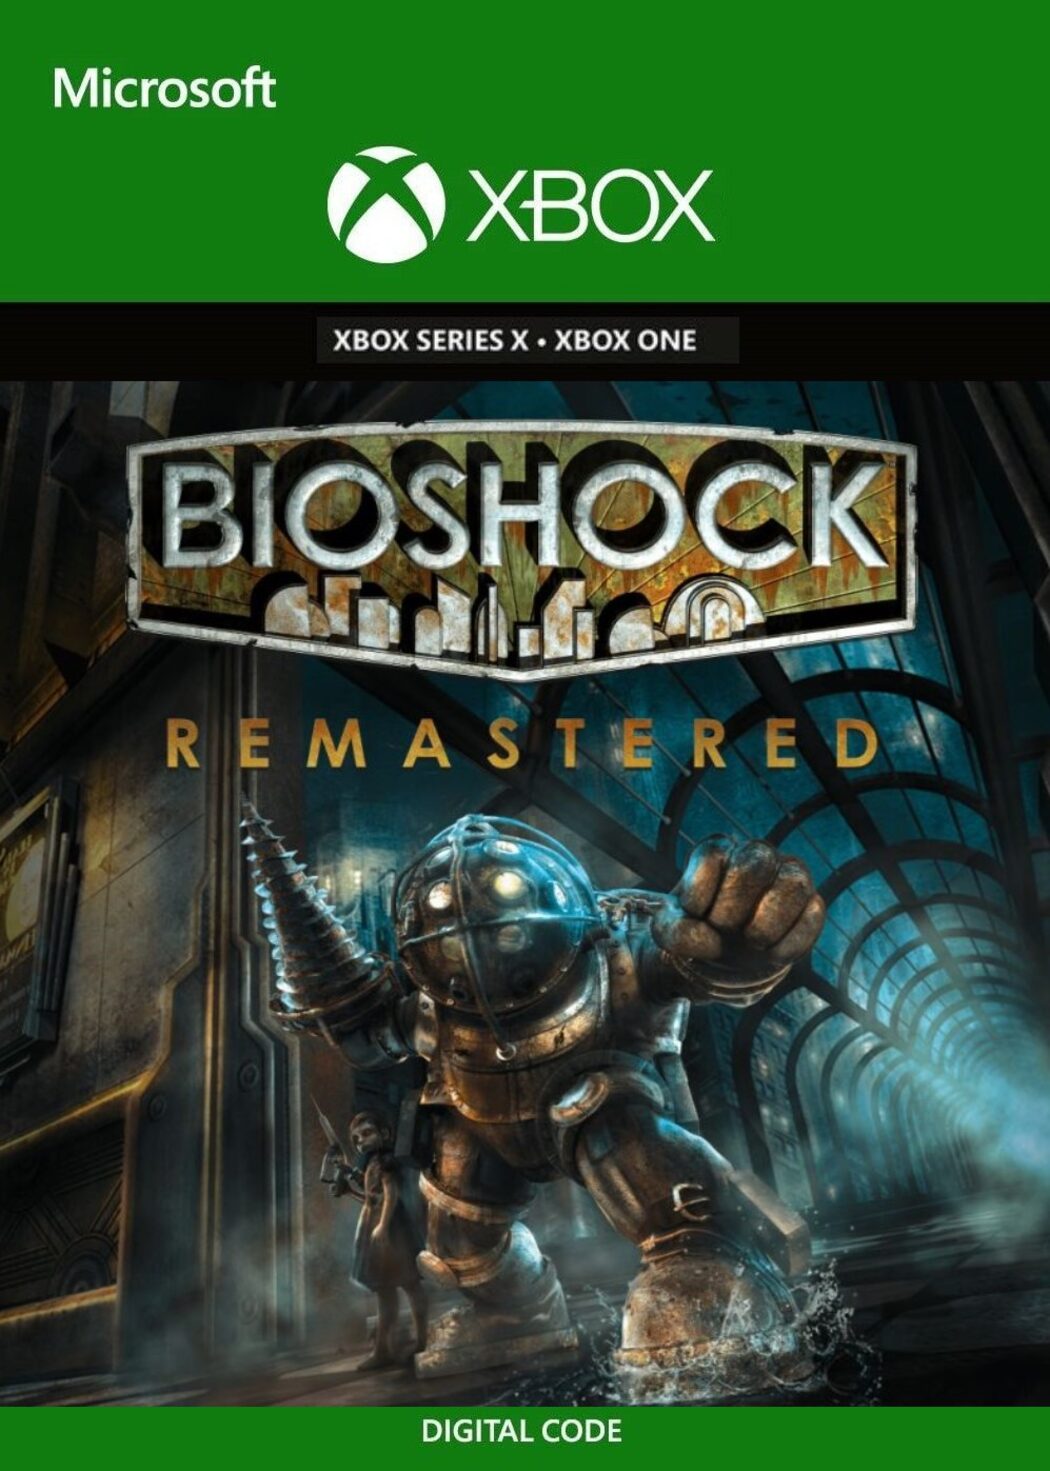 Cuaderno Hombre rico Equivalente Buy Bioshock Remastered Xbox key! Cheap price | ENEBA